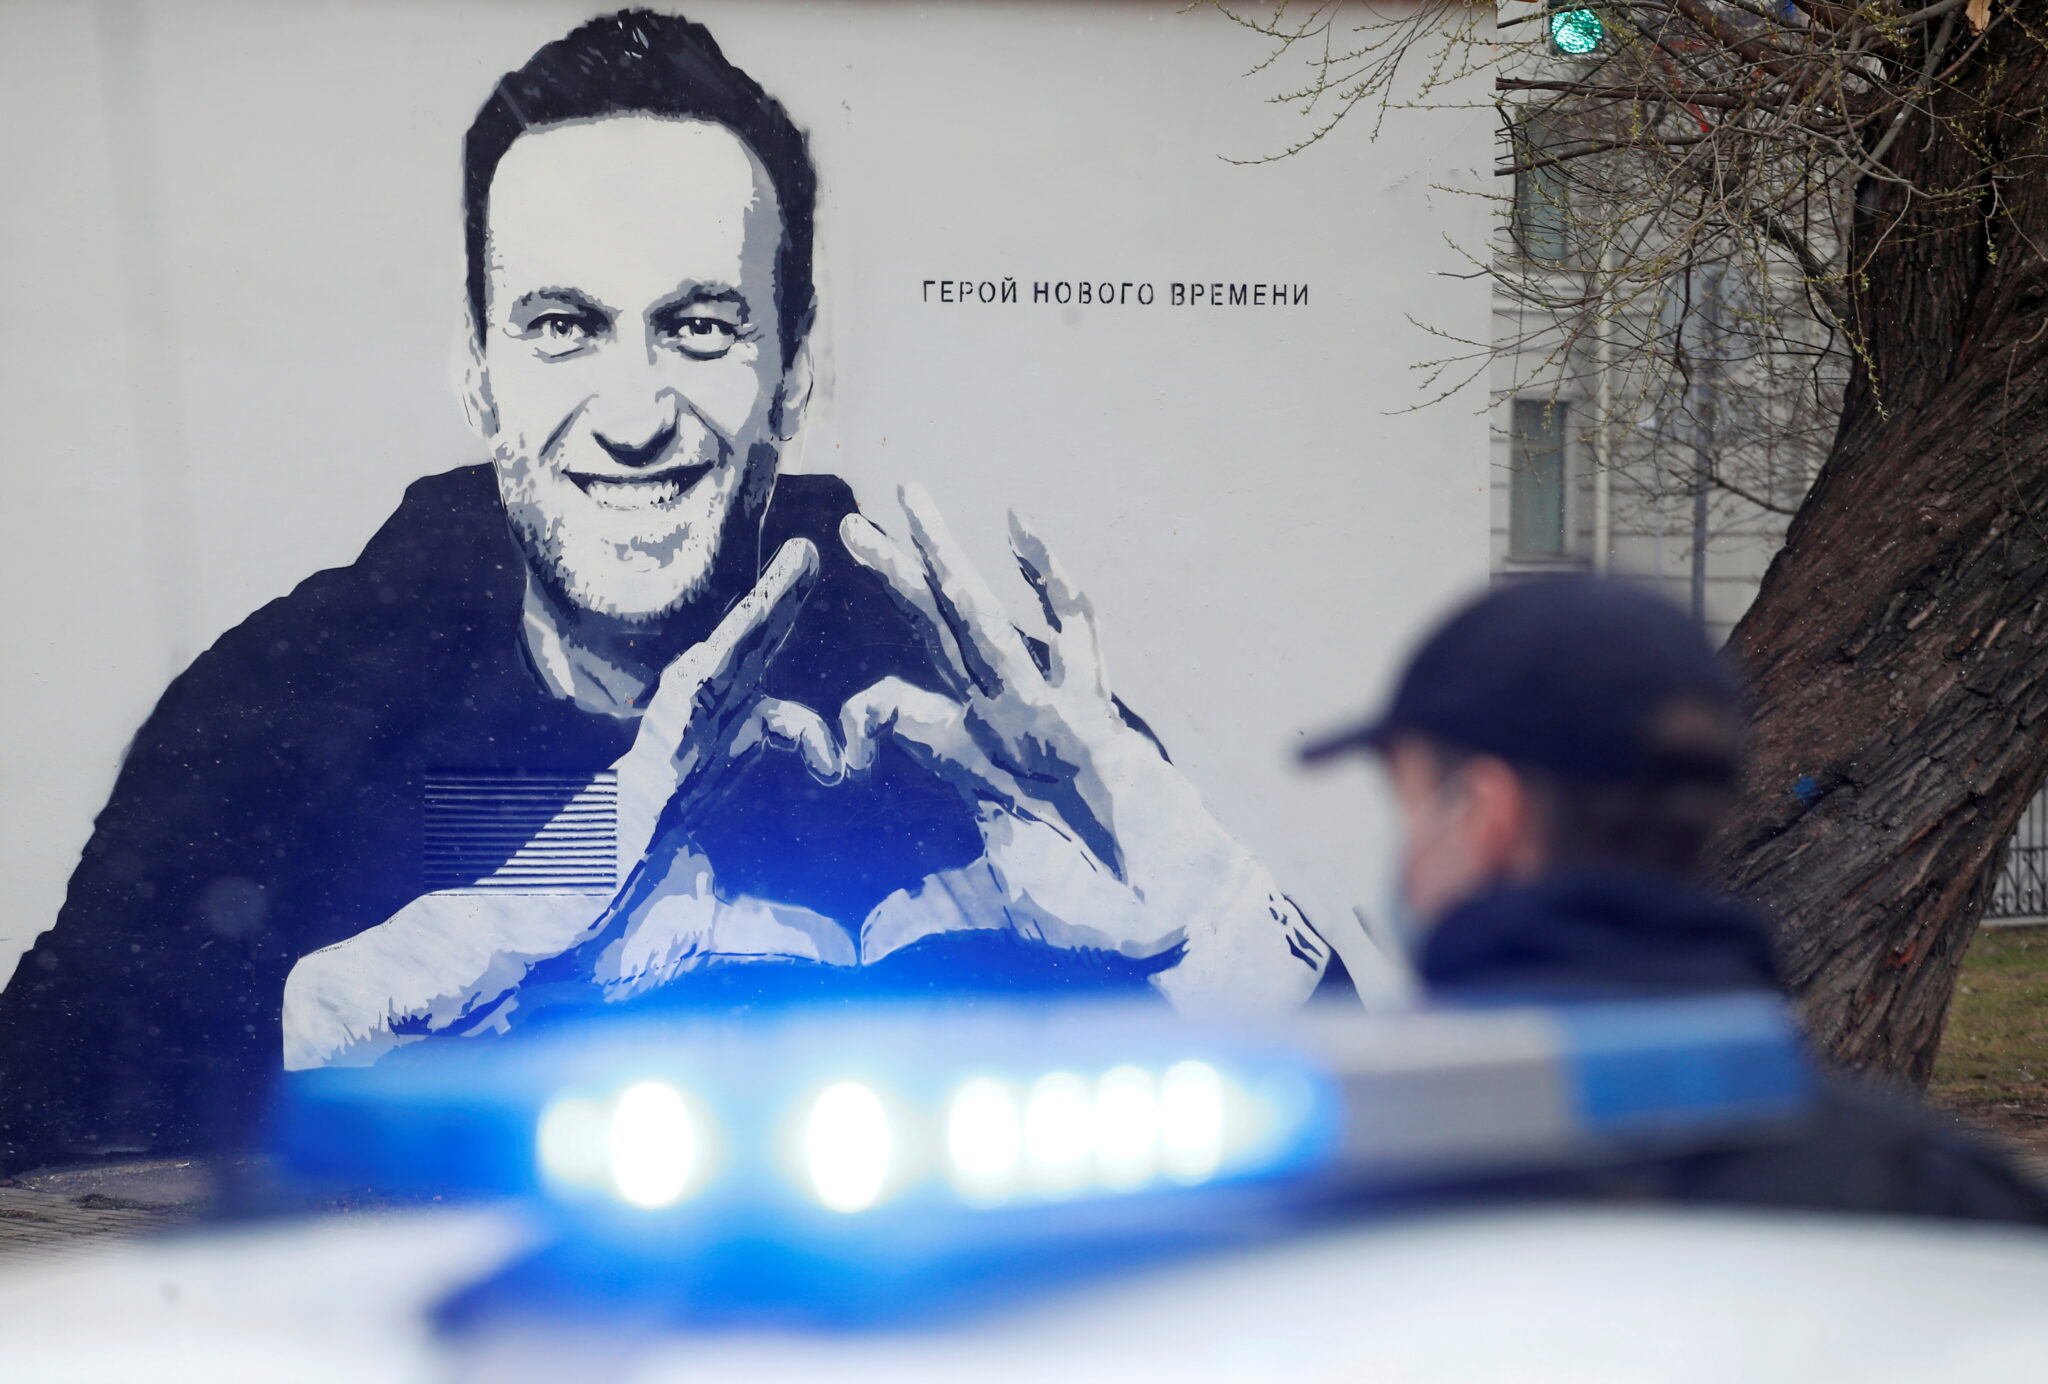 Полицейский стоит рядом с автомобилем перед граффити с изображением заключенного в тюрьму российского оппозиционного политика Алексея Навального в Санкт-Петербурге. 28 апреля 2021 года. Фото Anton Vaganov/REUTERS/Scanpix/Leta